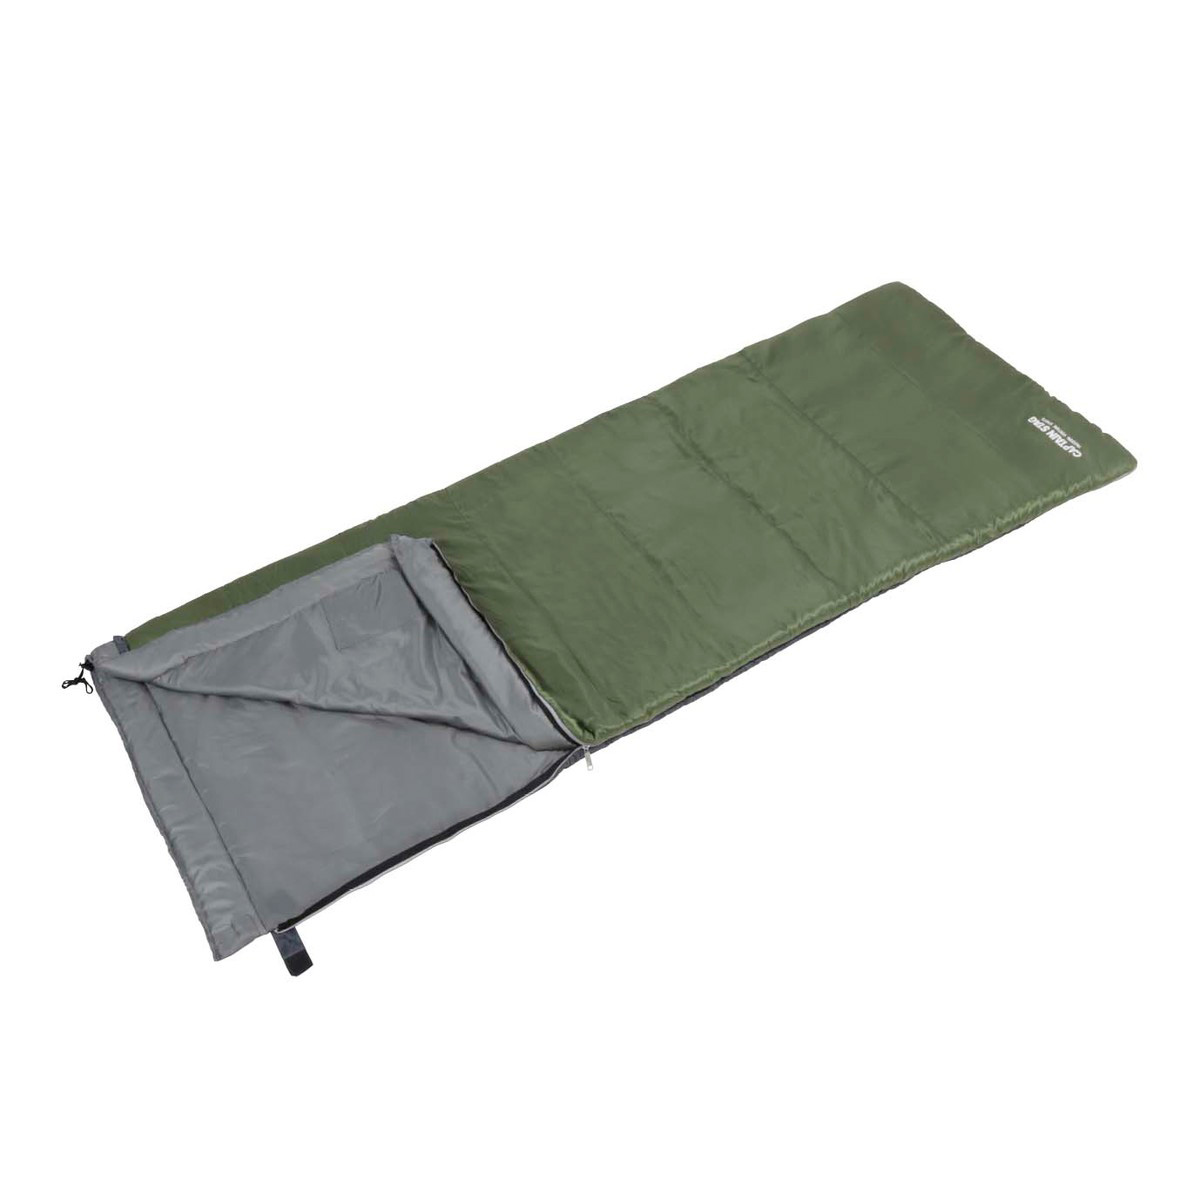 1170円 注目ブランドのギフト 寝袋 シュラフ 封筒型 -15℃ ダークグリーン 新品未使用 キャンプ